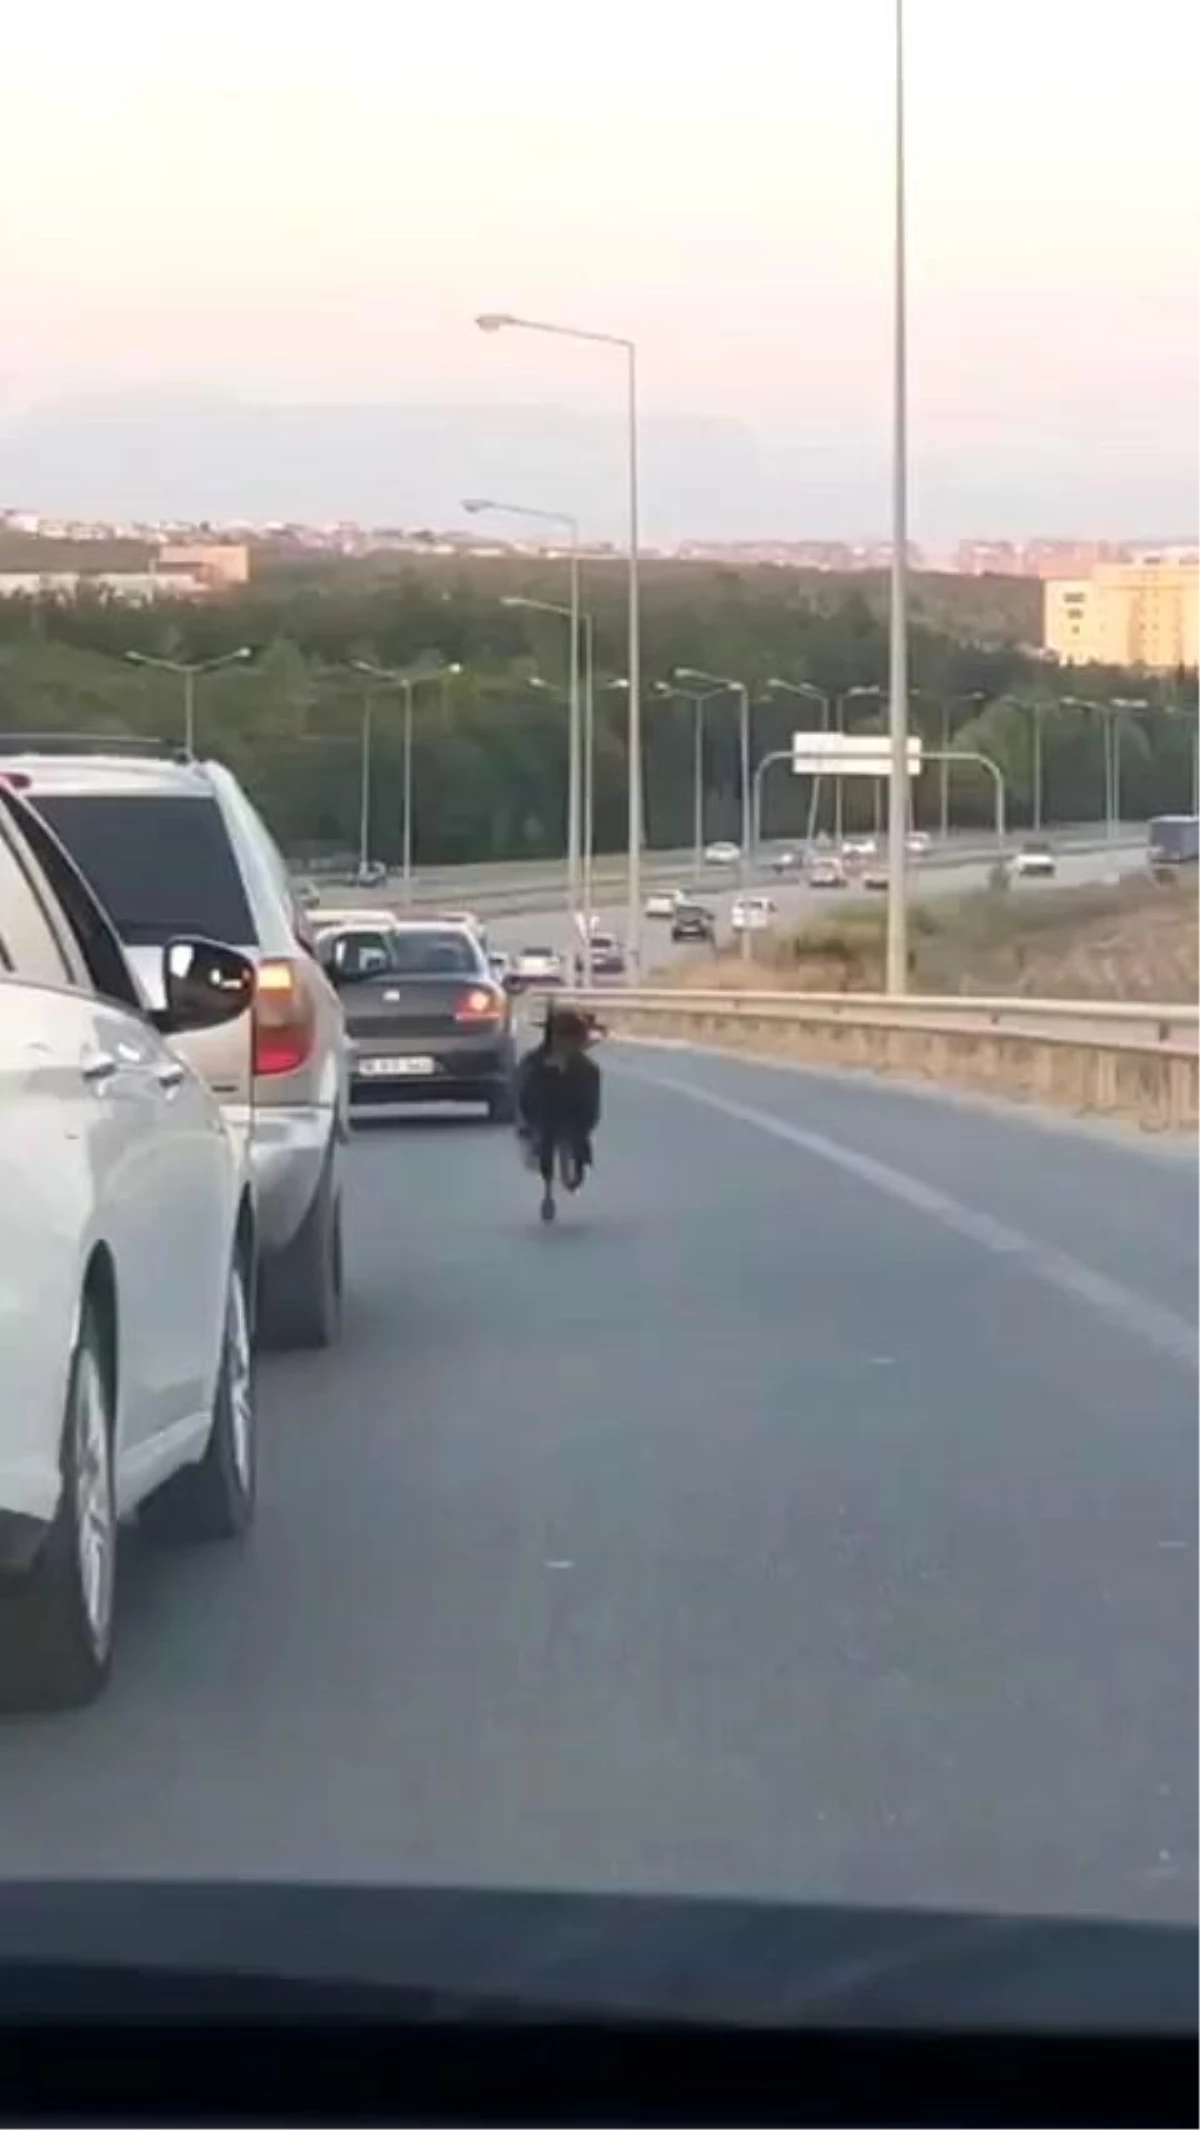 Otobana çıkan keçi, trafiği alt üst etti